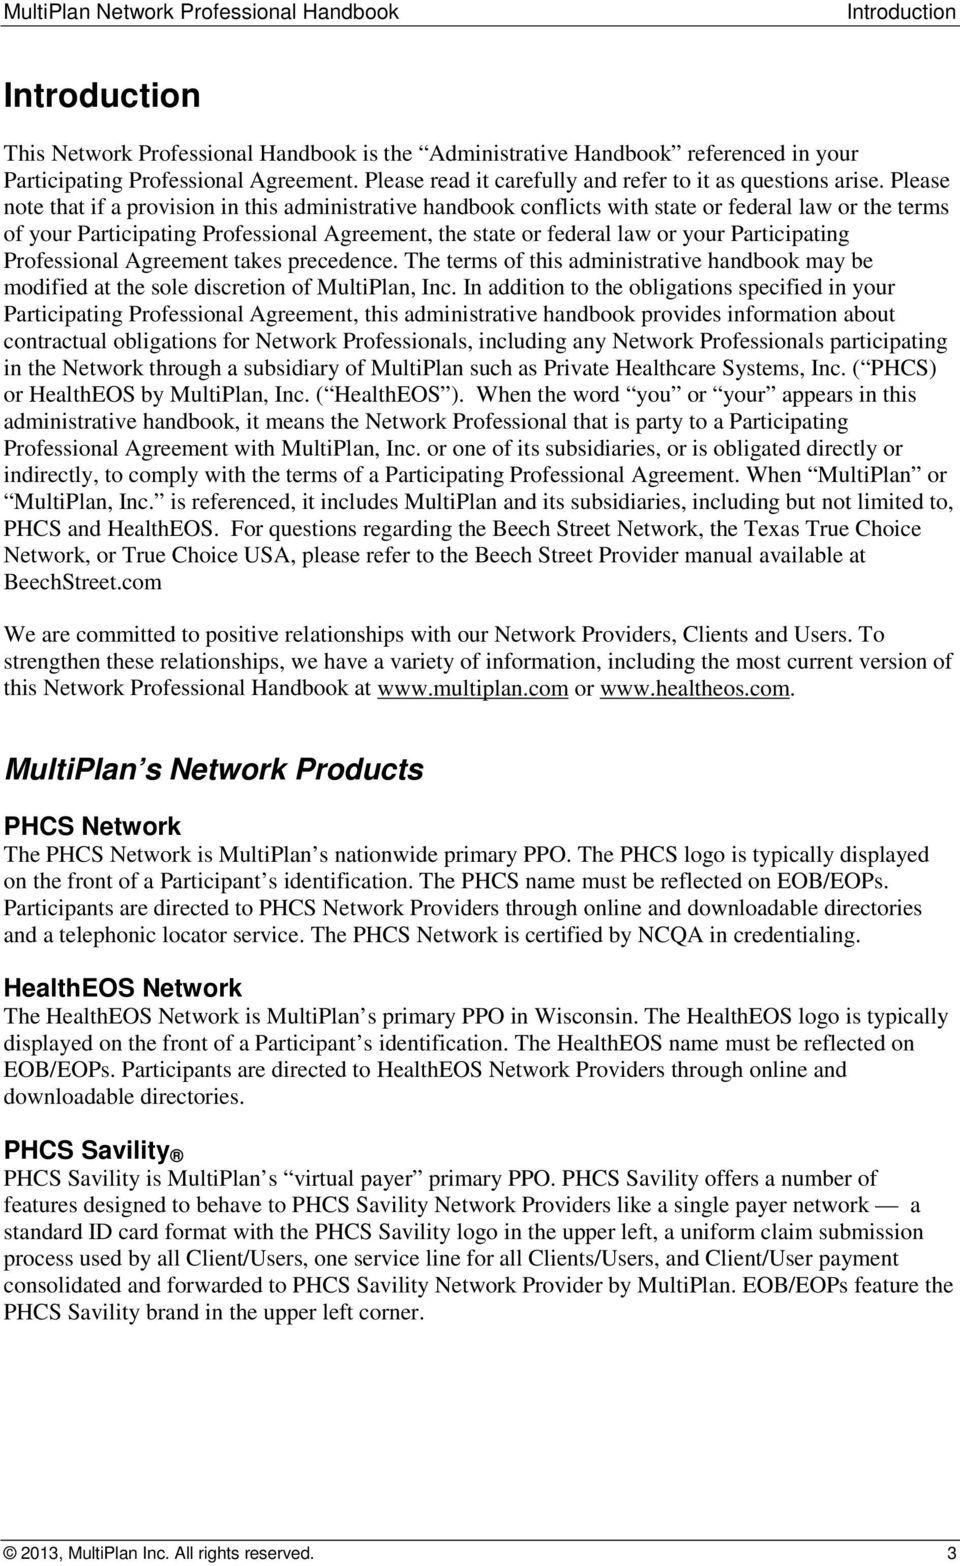 MultiPlan Logo - MultiPlan Network Professional Handbook - PDF